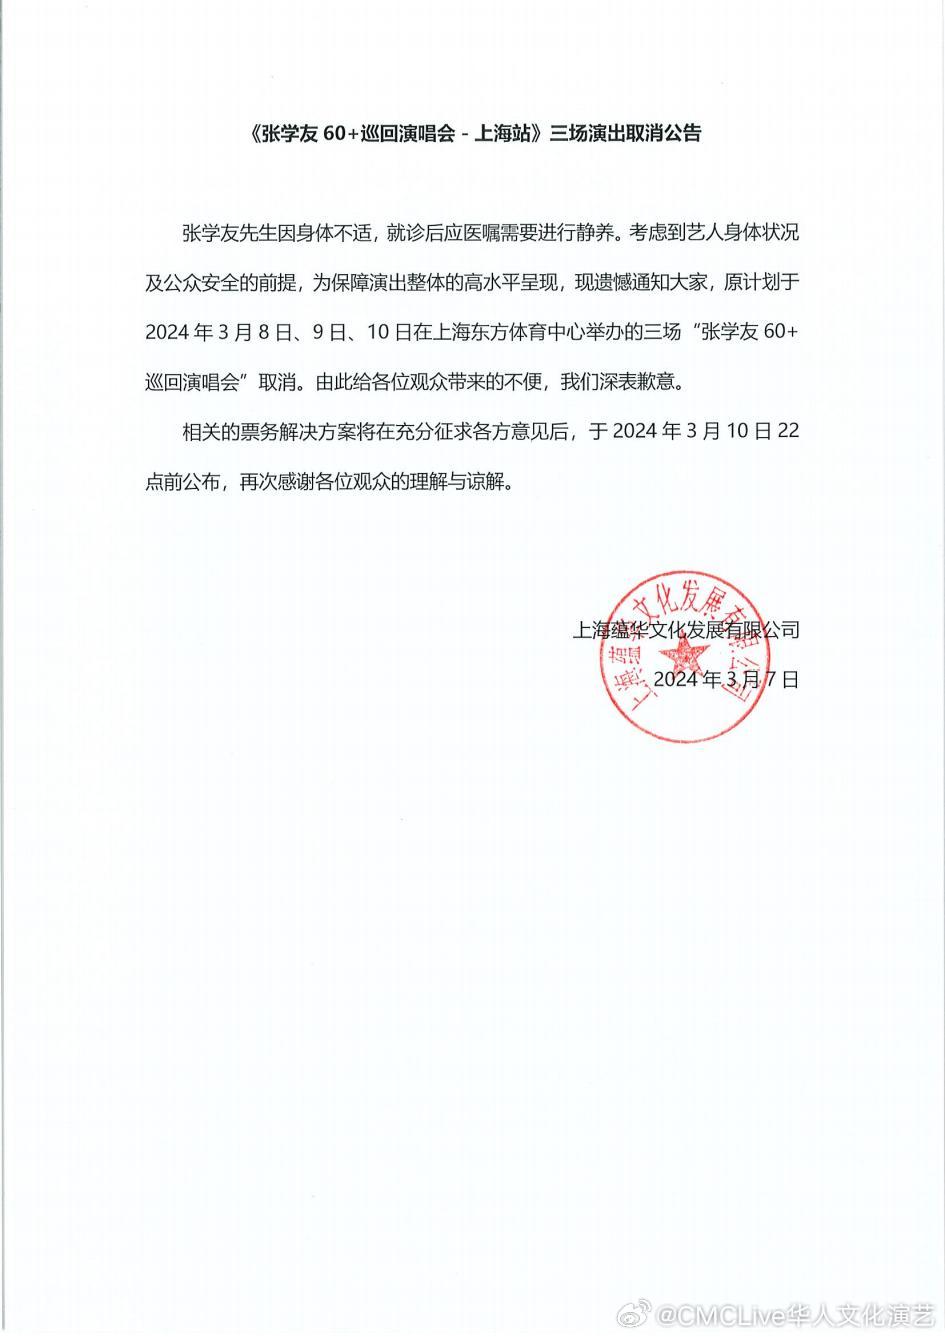 主辦單位本月7日突然宣布張學友因身體不適，取消上周五至周日舉行的三場上海演唱會。